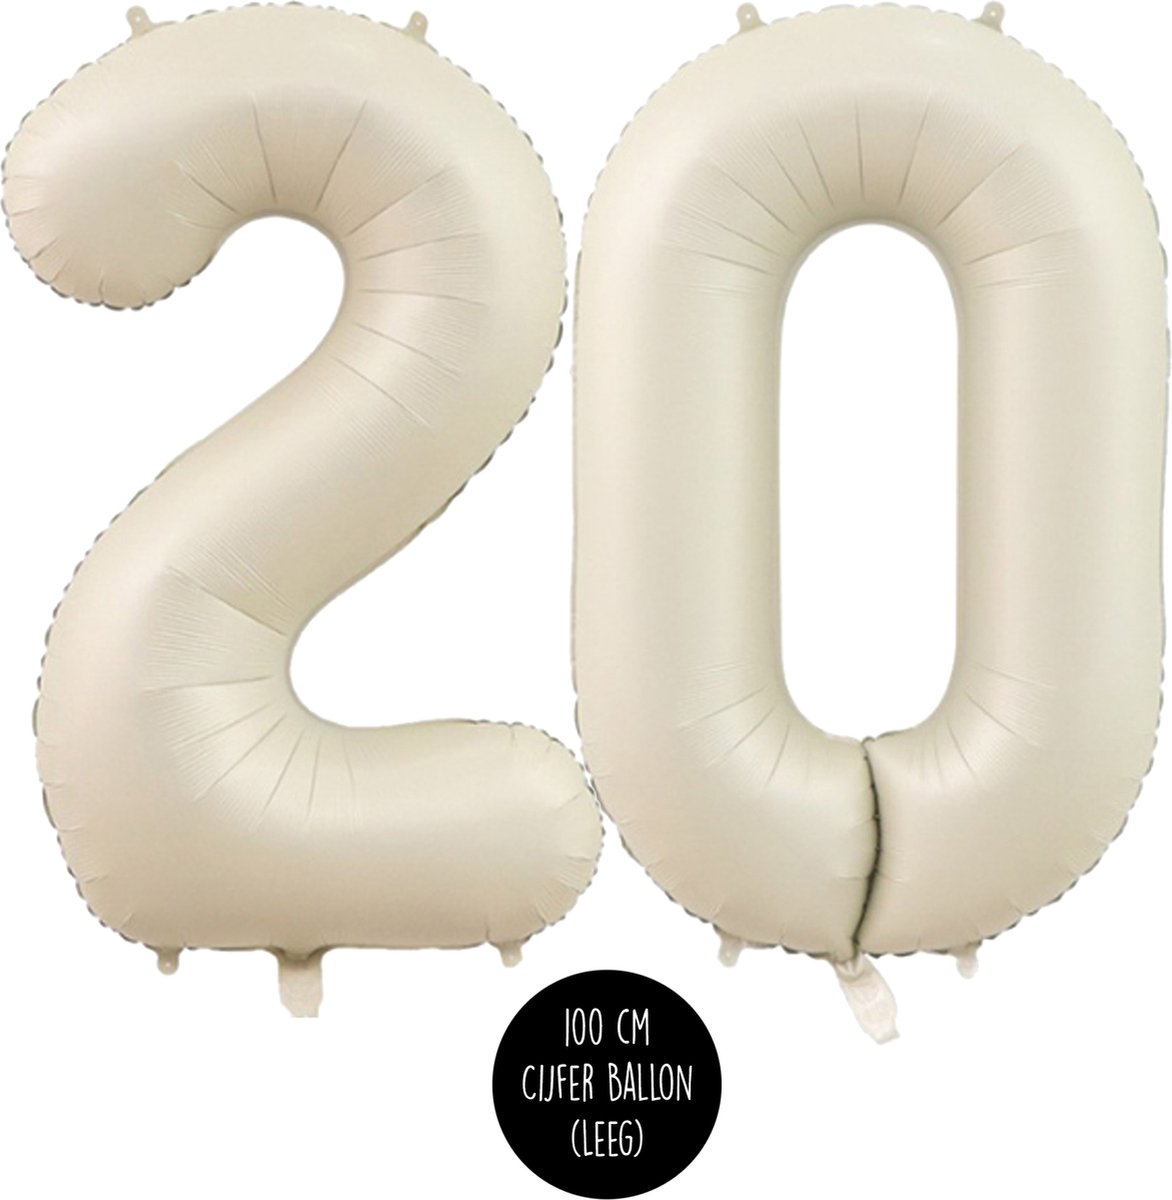 Ballon Chiffre 20 ans aluminium Rouge 102cm : Ballons 20 ans